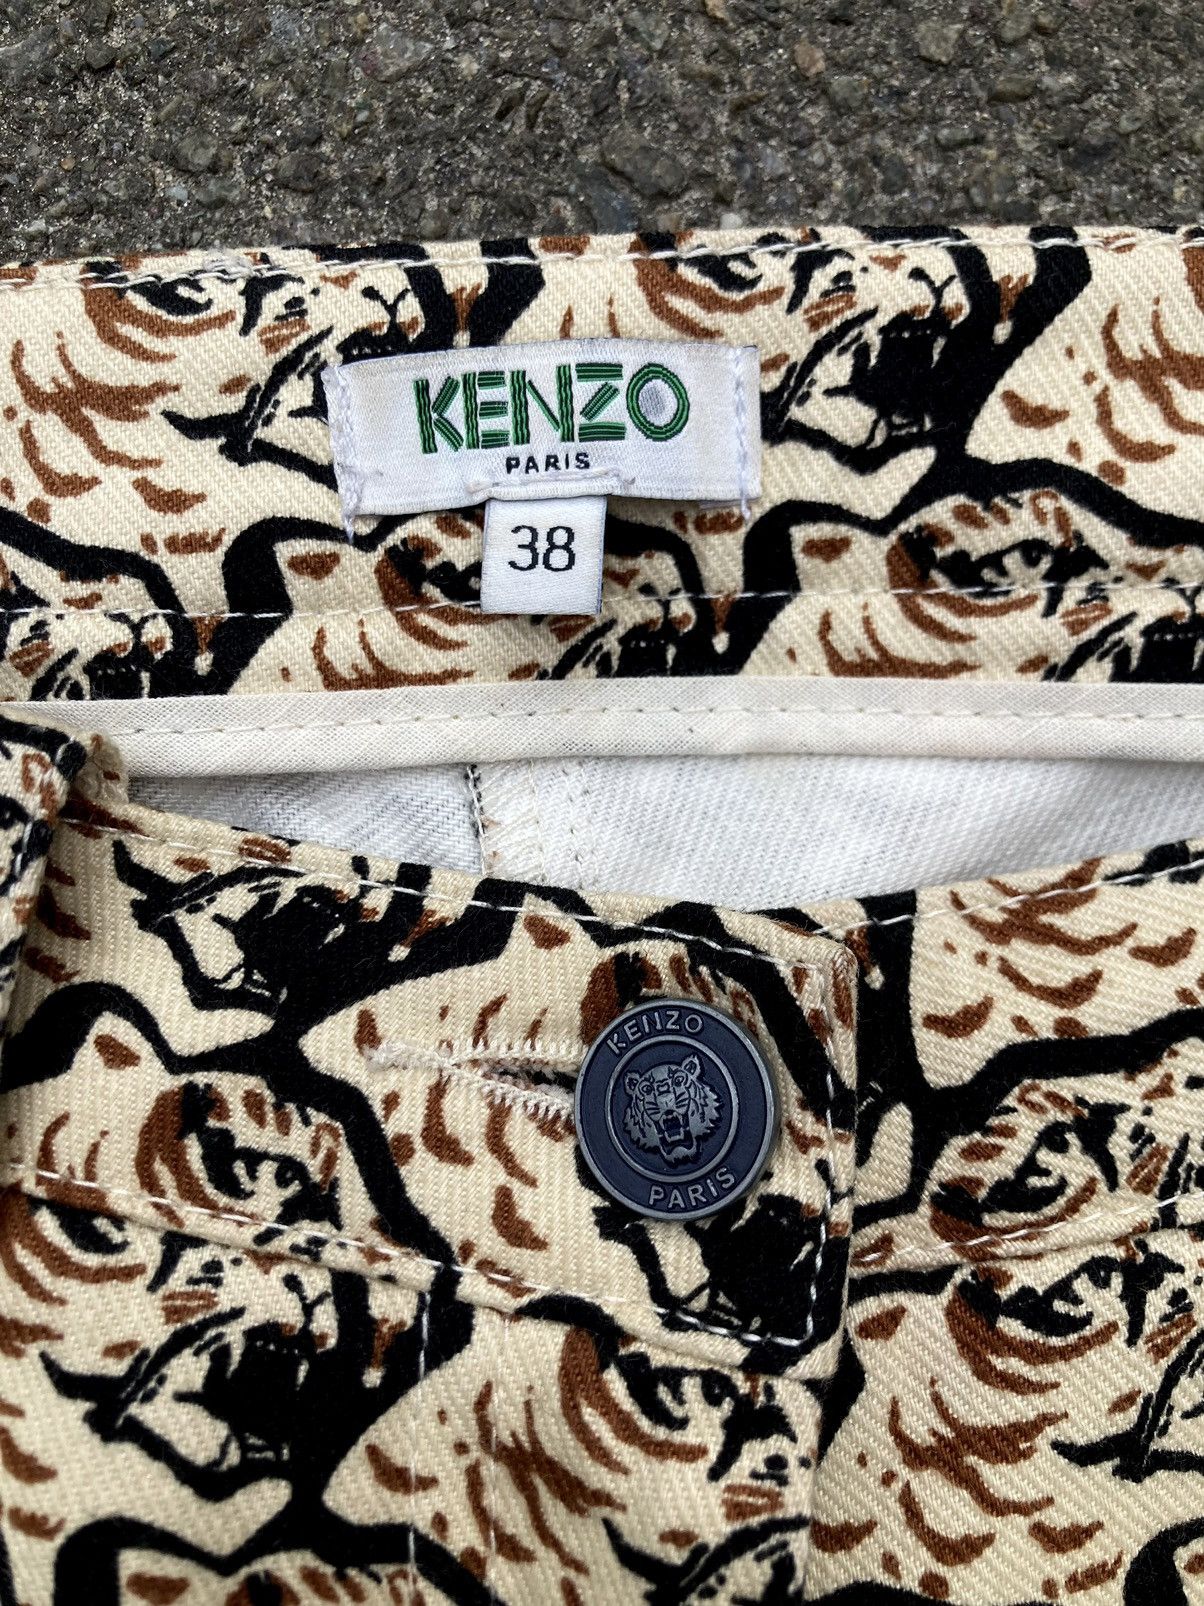 Kenzo Kenzo Paris Tiger Pattern Women Slim Fit Jeans Size 38 Size 26" / US 2 / IT 38 - 8 Thumbnail